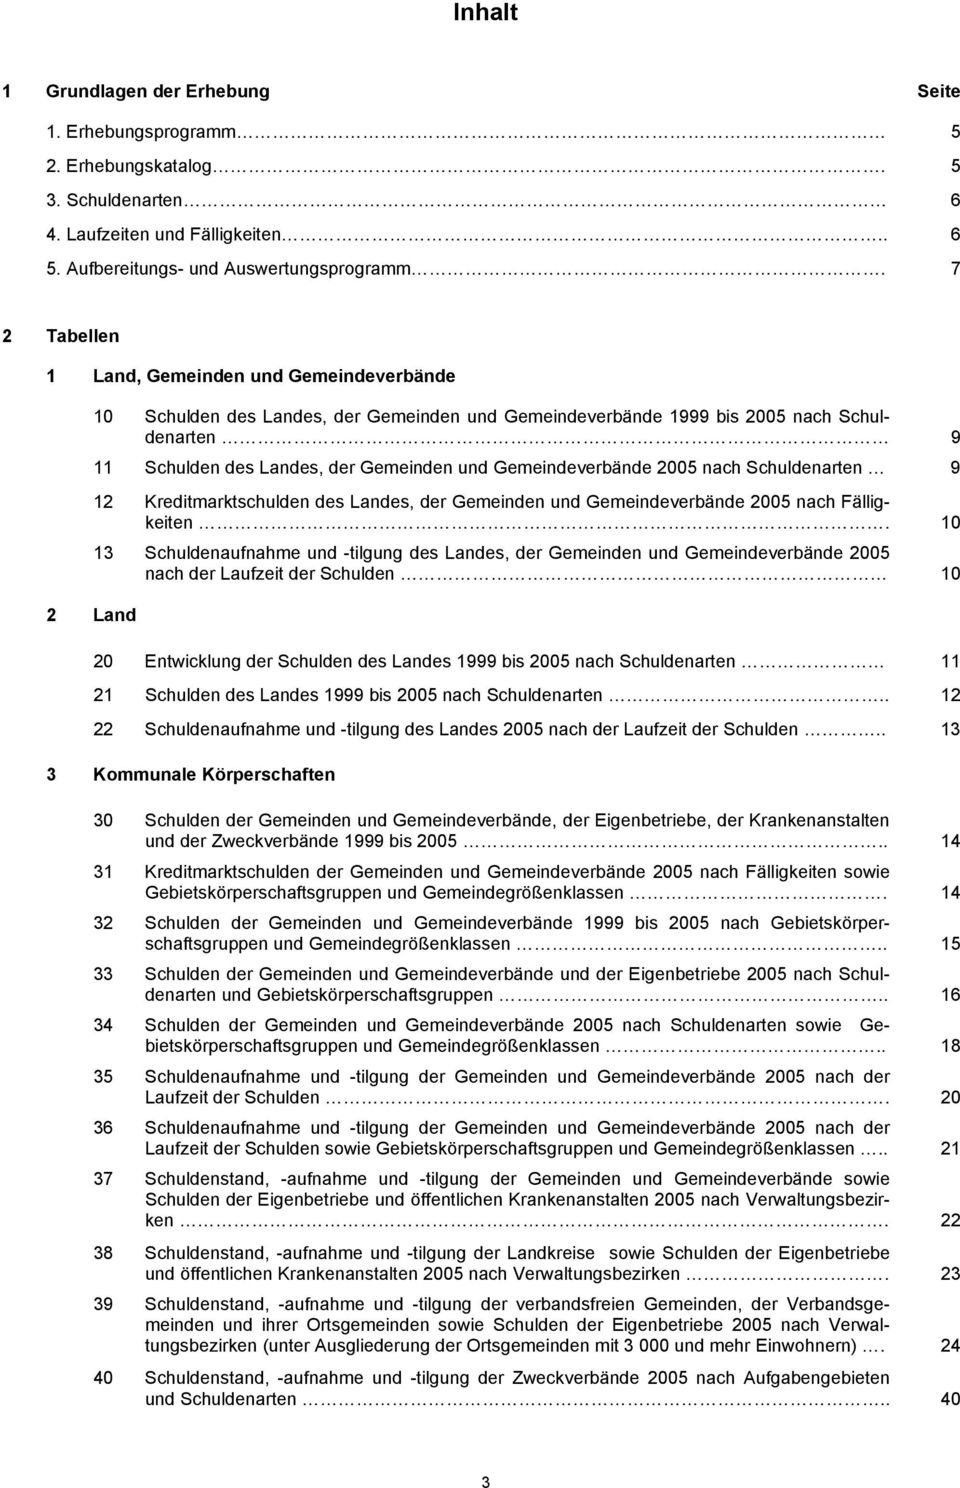 Kreditmarktschulden des Landes, der Gemeinden und Gemeindeverbände 2005 nach Fälligkeiten.